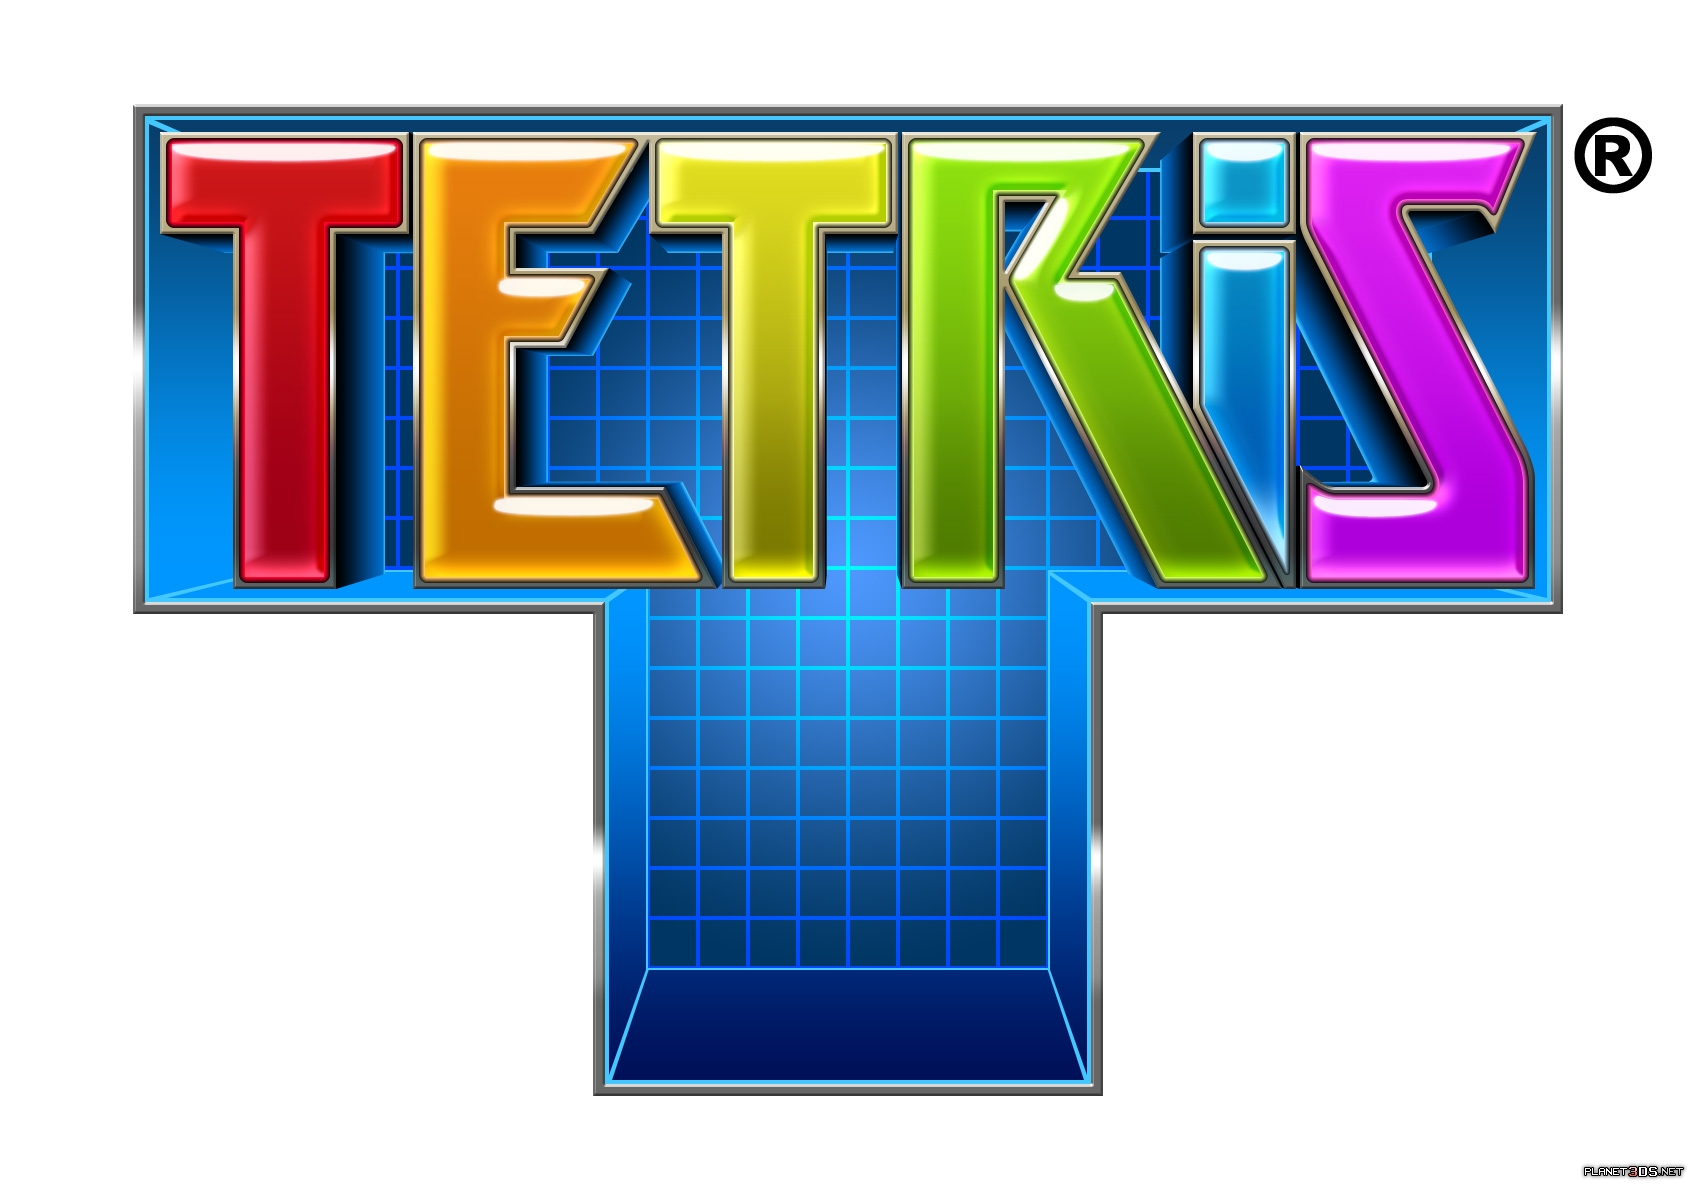 tetris_logo_yrc4